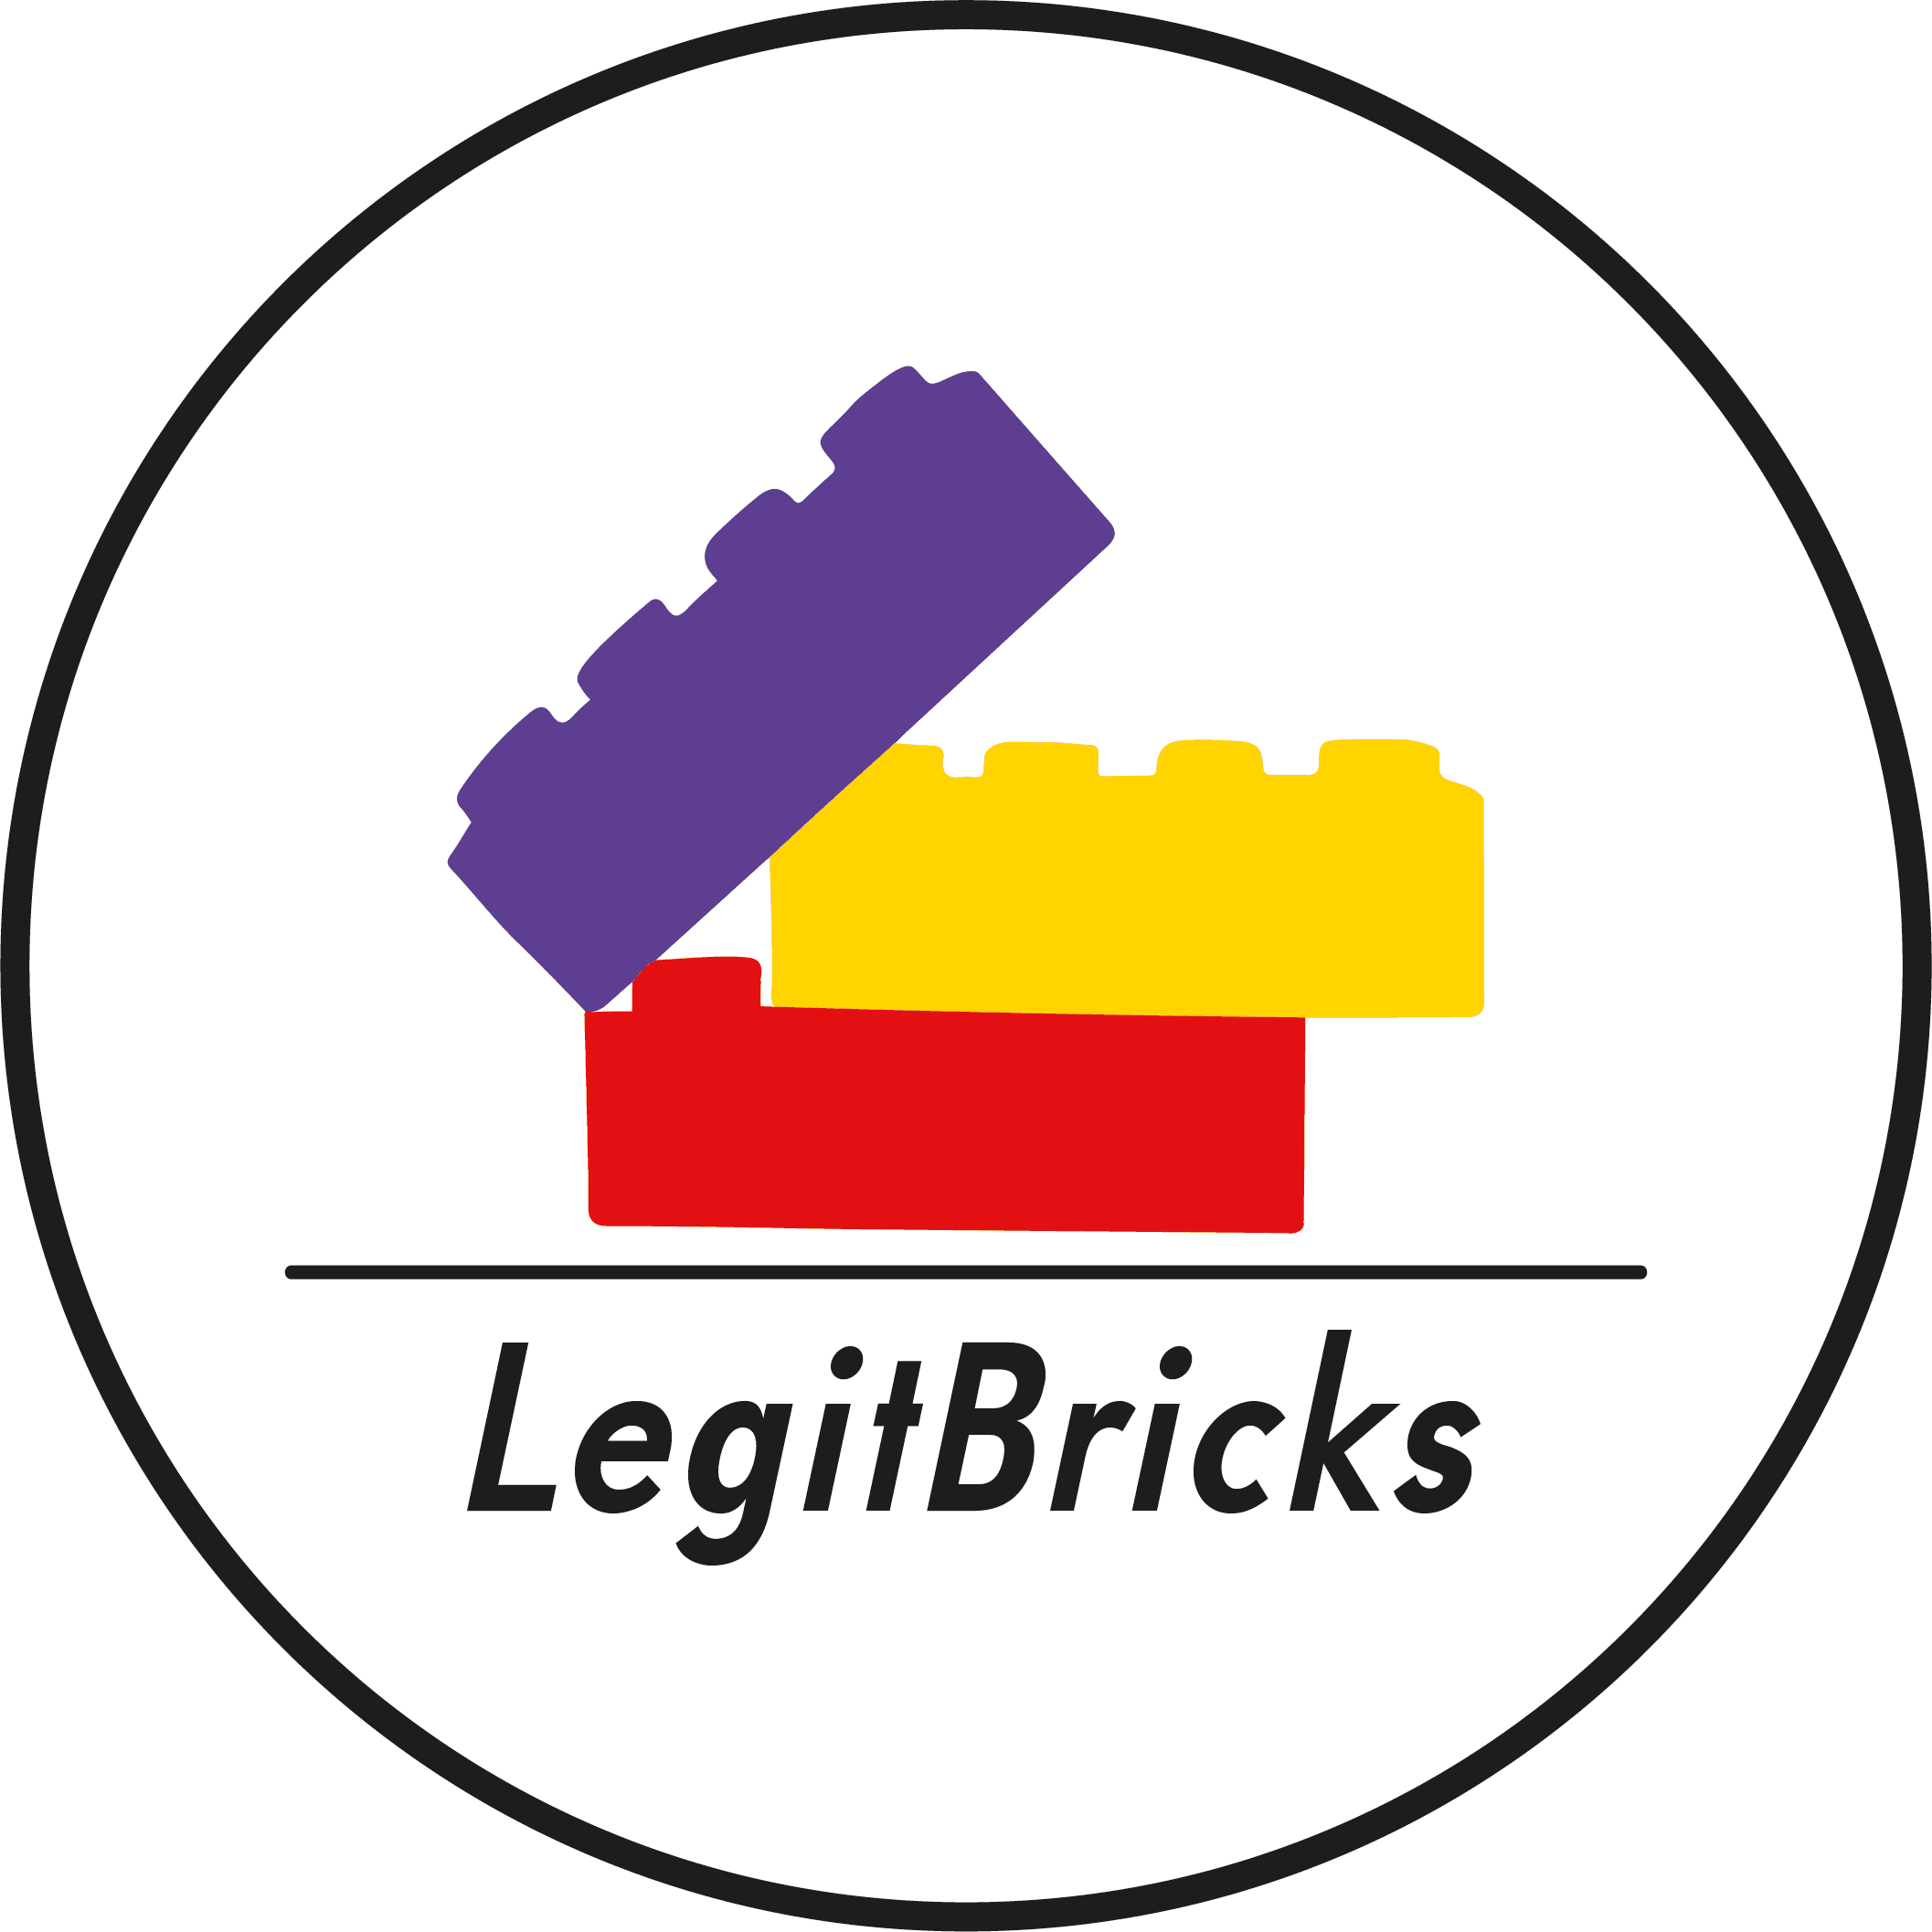 LegitBricks